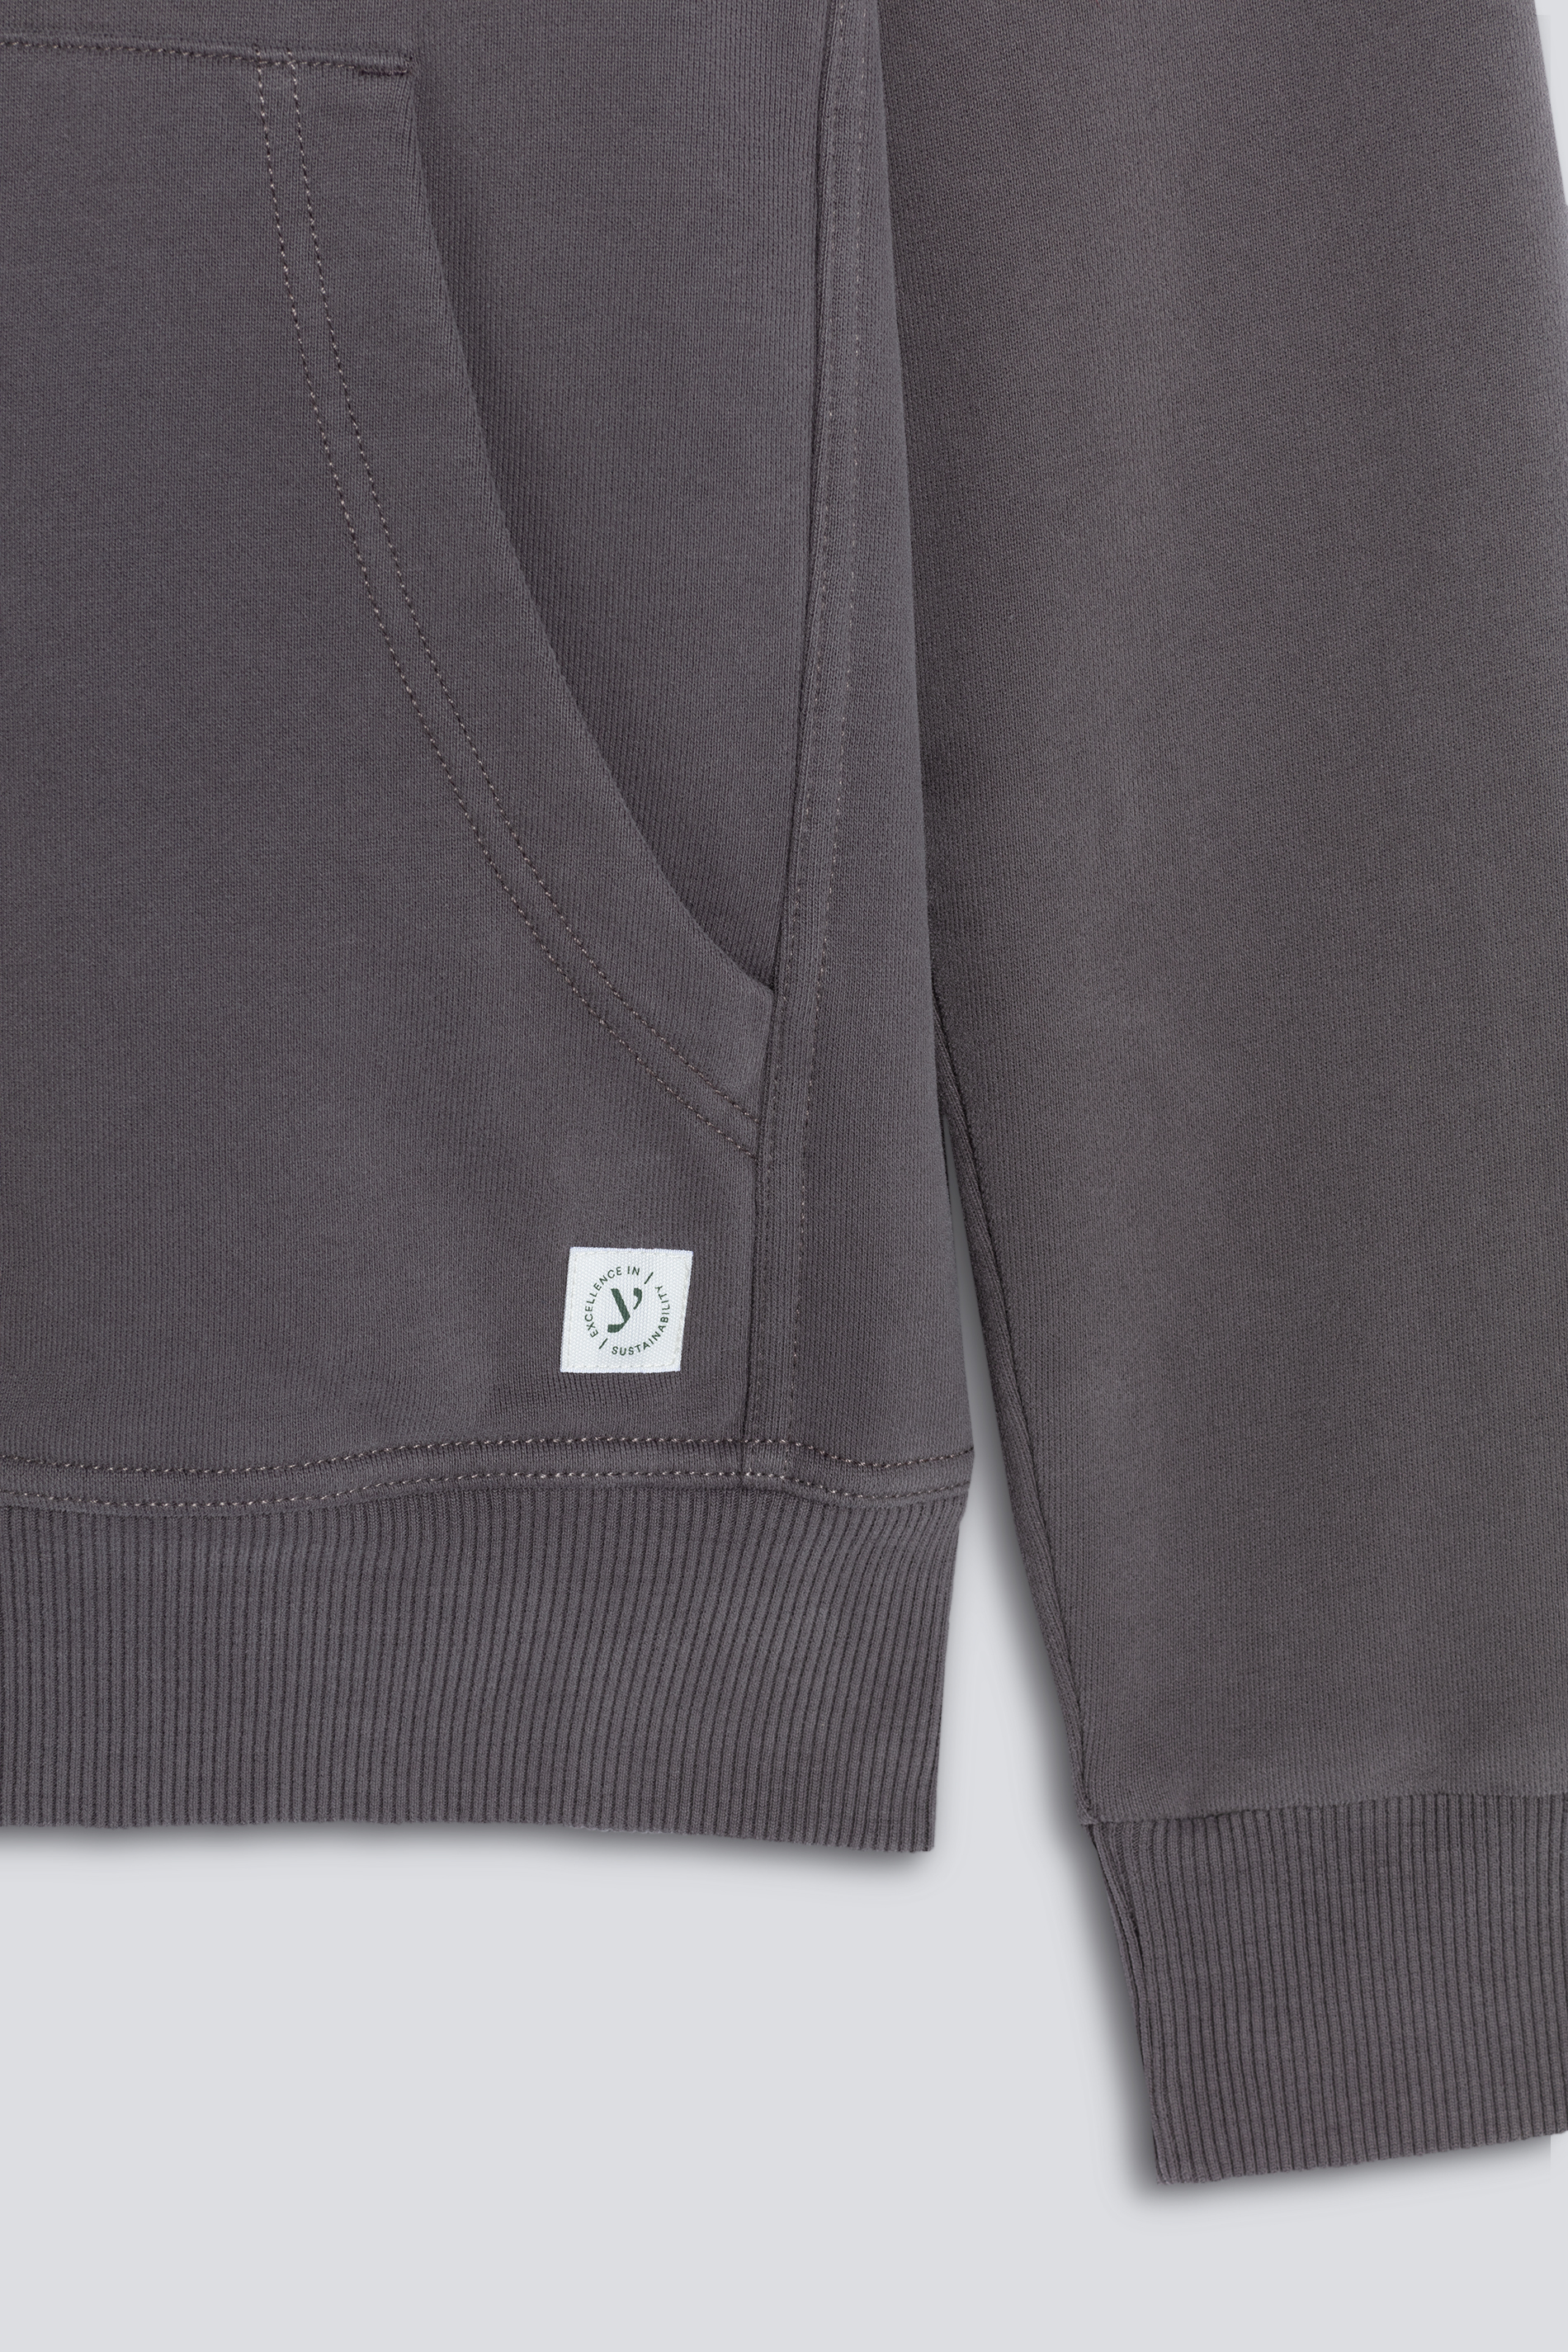 Hoodie-Sweatshirt Eiffel Tower Serie Soft Felpa Detailansicht 01 | mey®